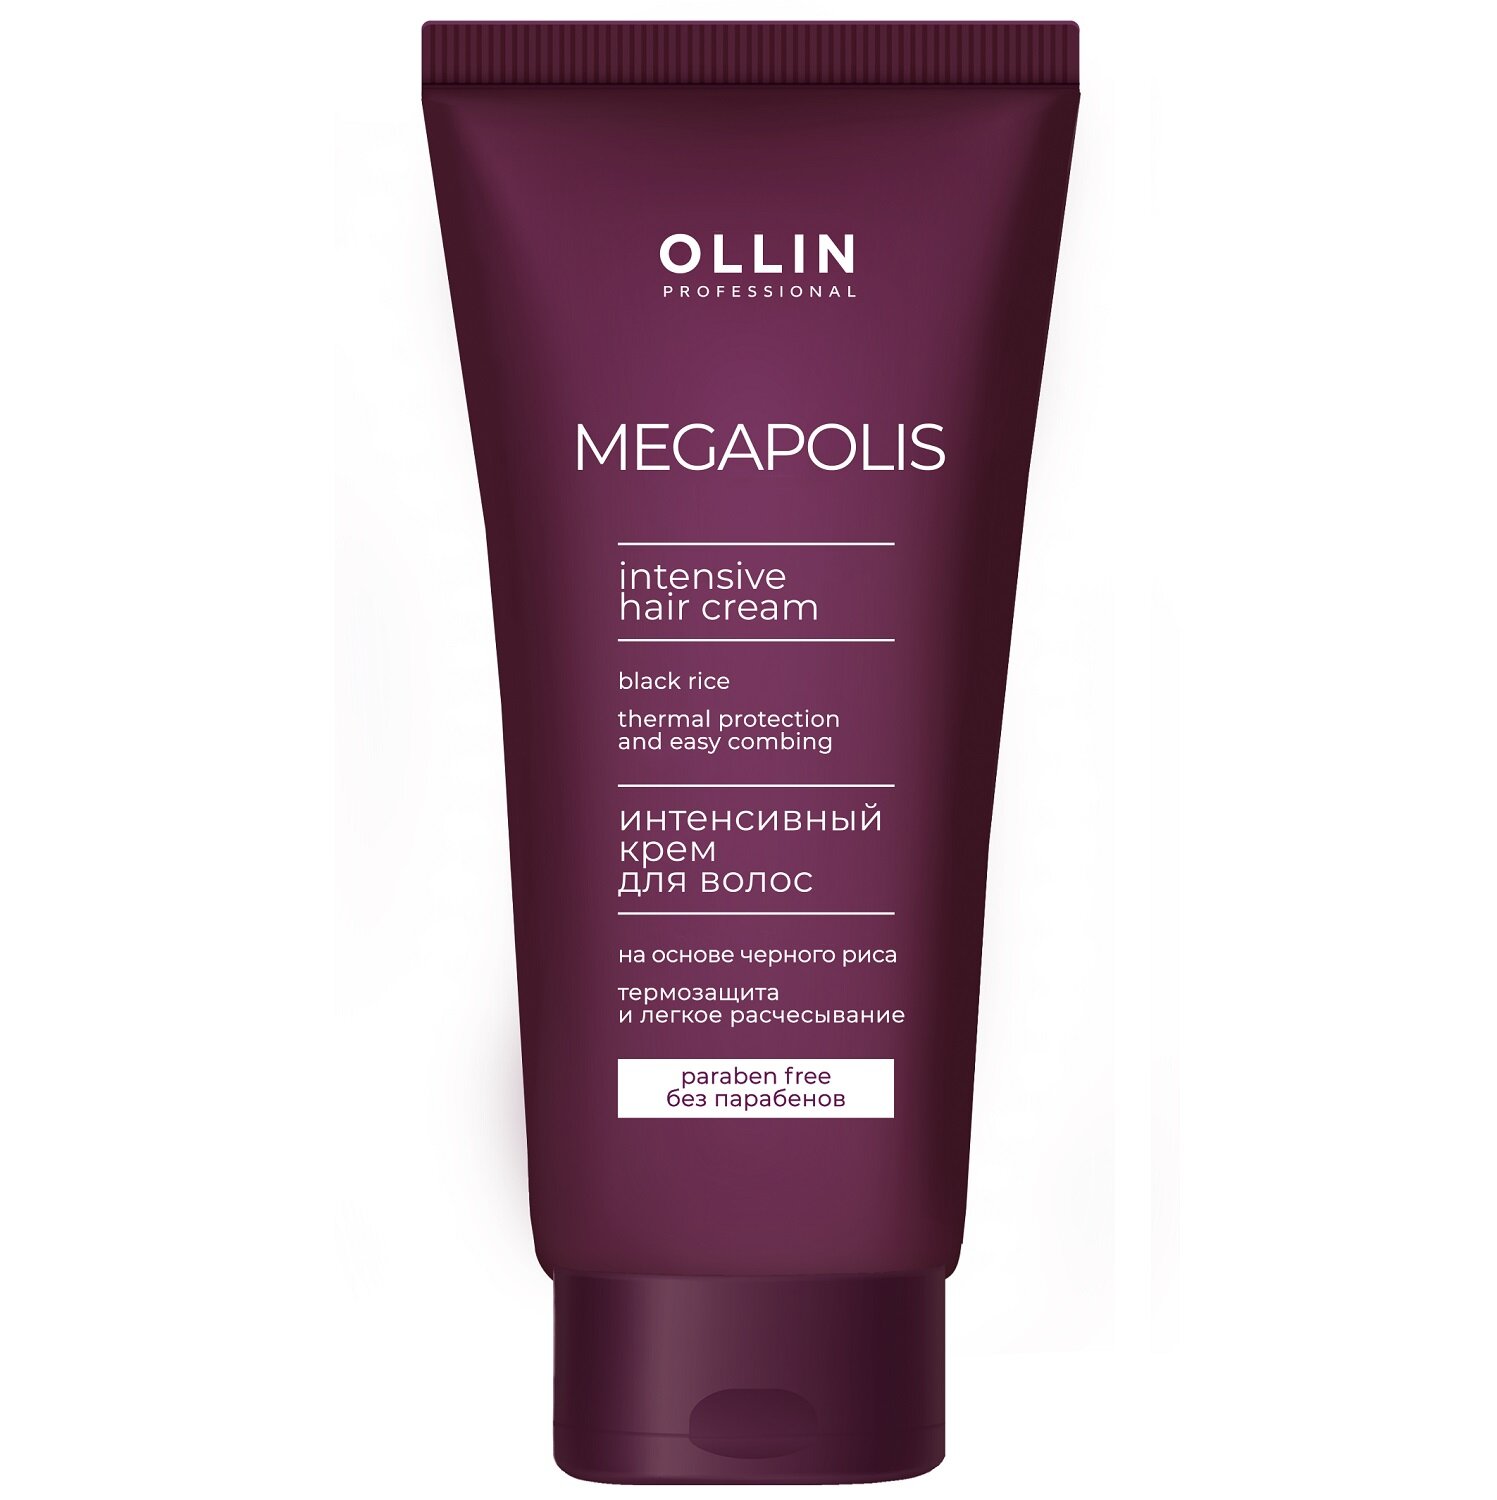 OLLIN MEGAPOLIS Интенсивный крем для волос "Легкое расчёсывание" 200мл